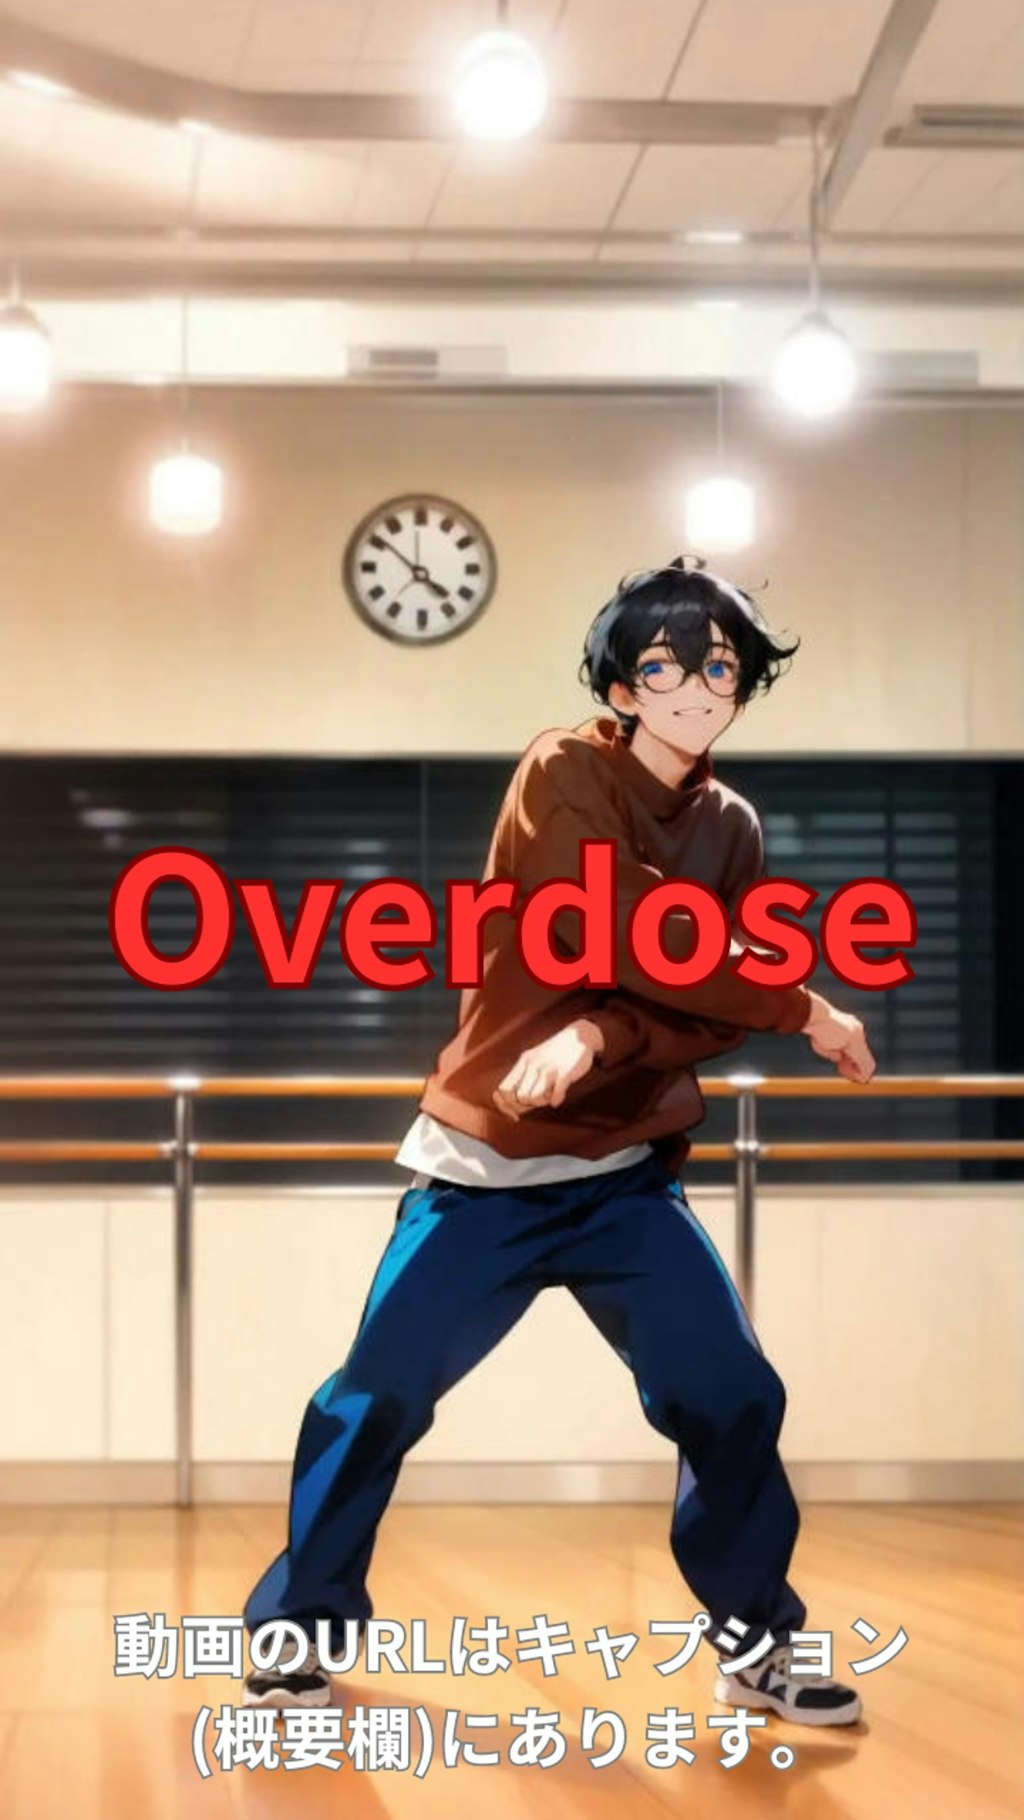 【動画】「Overdose」を踊ってみた【KYOHEY KIKUCHI 様】【めんたるさん02】